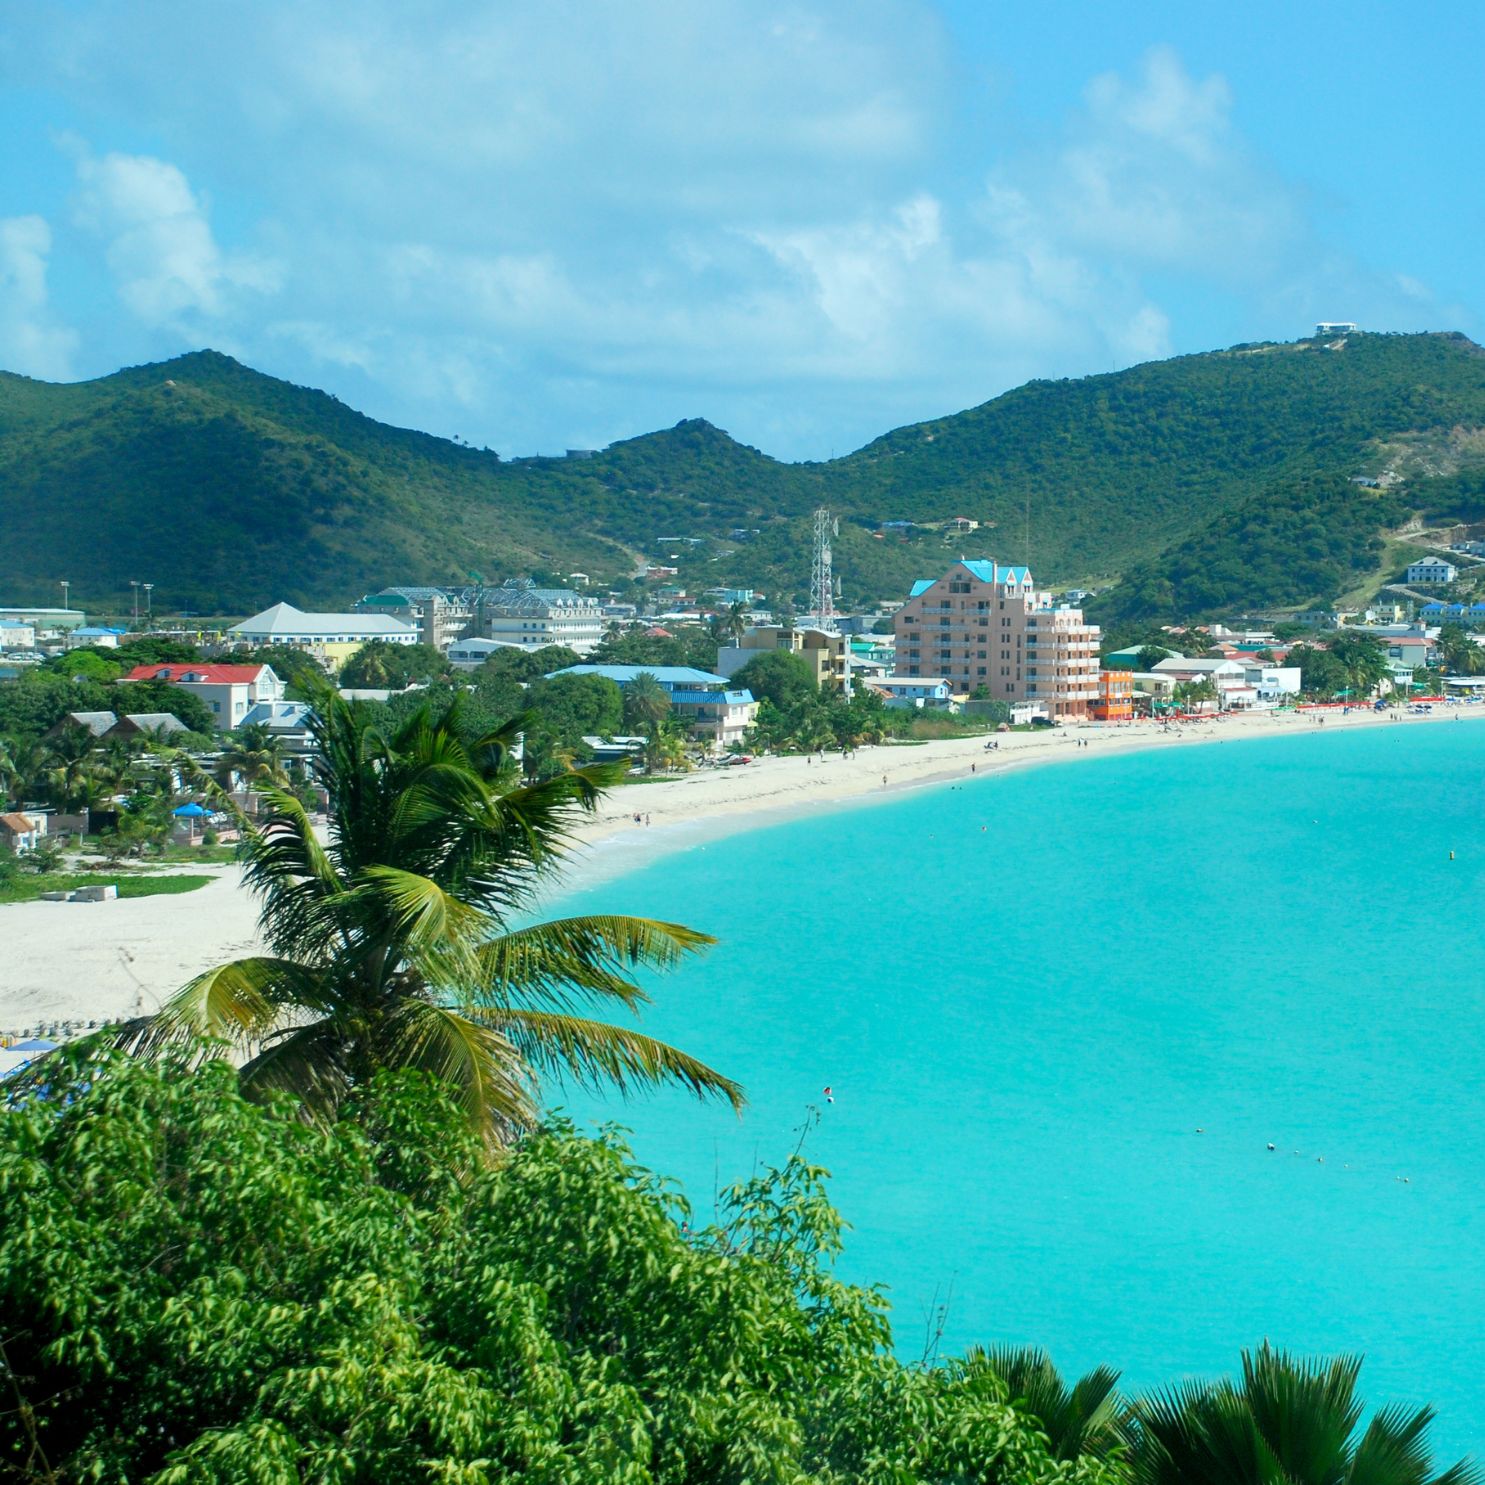 Beauty of St. Maarten